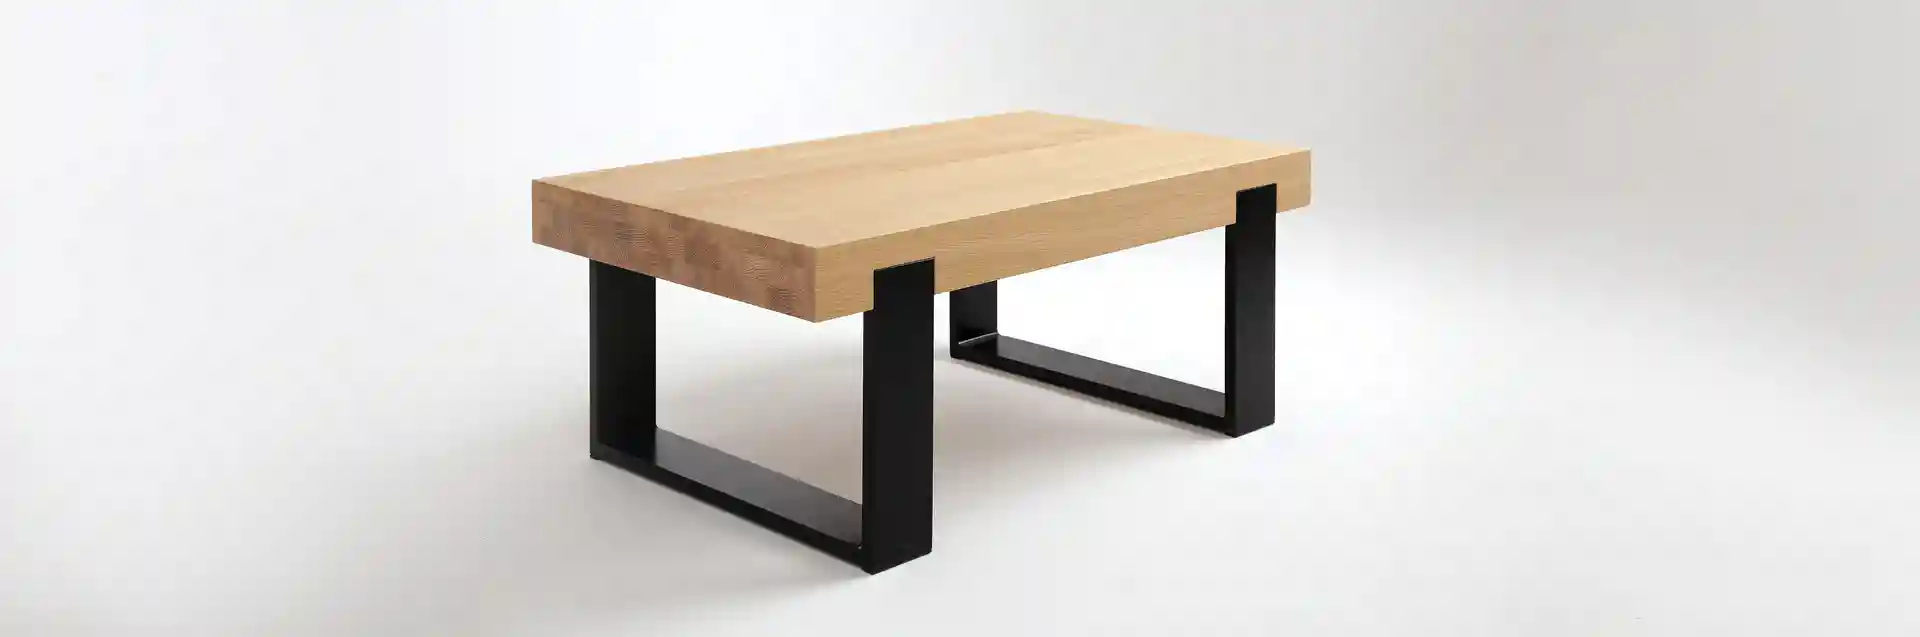 Drewniany stolik kawowy MILONI FRAME, Kolor: 03 Natural z nogami w kolorze Czarny Mat, Wymiary: Dł: 100 x Sz: 70 x Wys: 30 cm